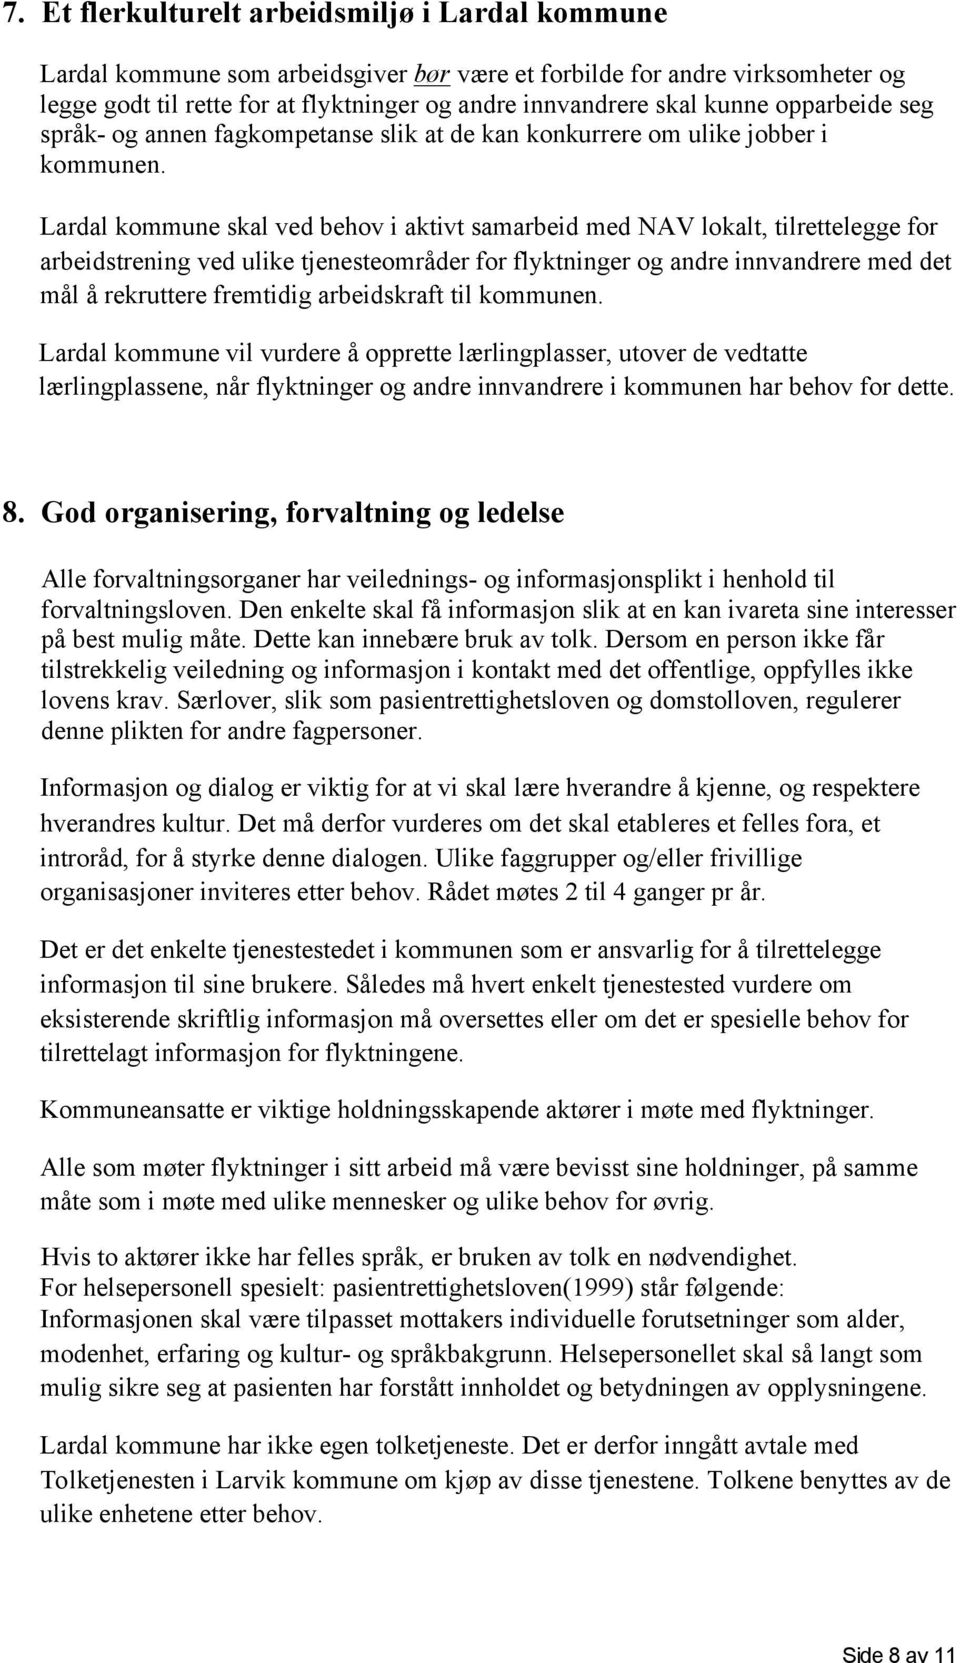 Lardal kommune skal ved behov i aktivt samarbeid med NAV lokalt, tilrettelegge for arbeidstrening ved ulike tjenesteområder for flyktninger og andre innvandrere med det mål å rekruttere fremtidig